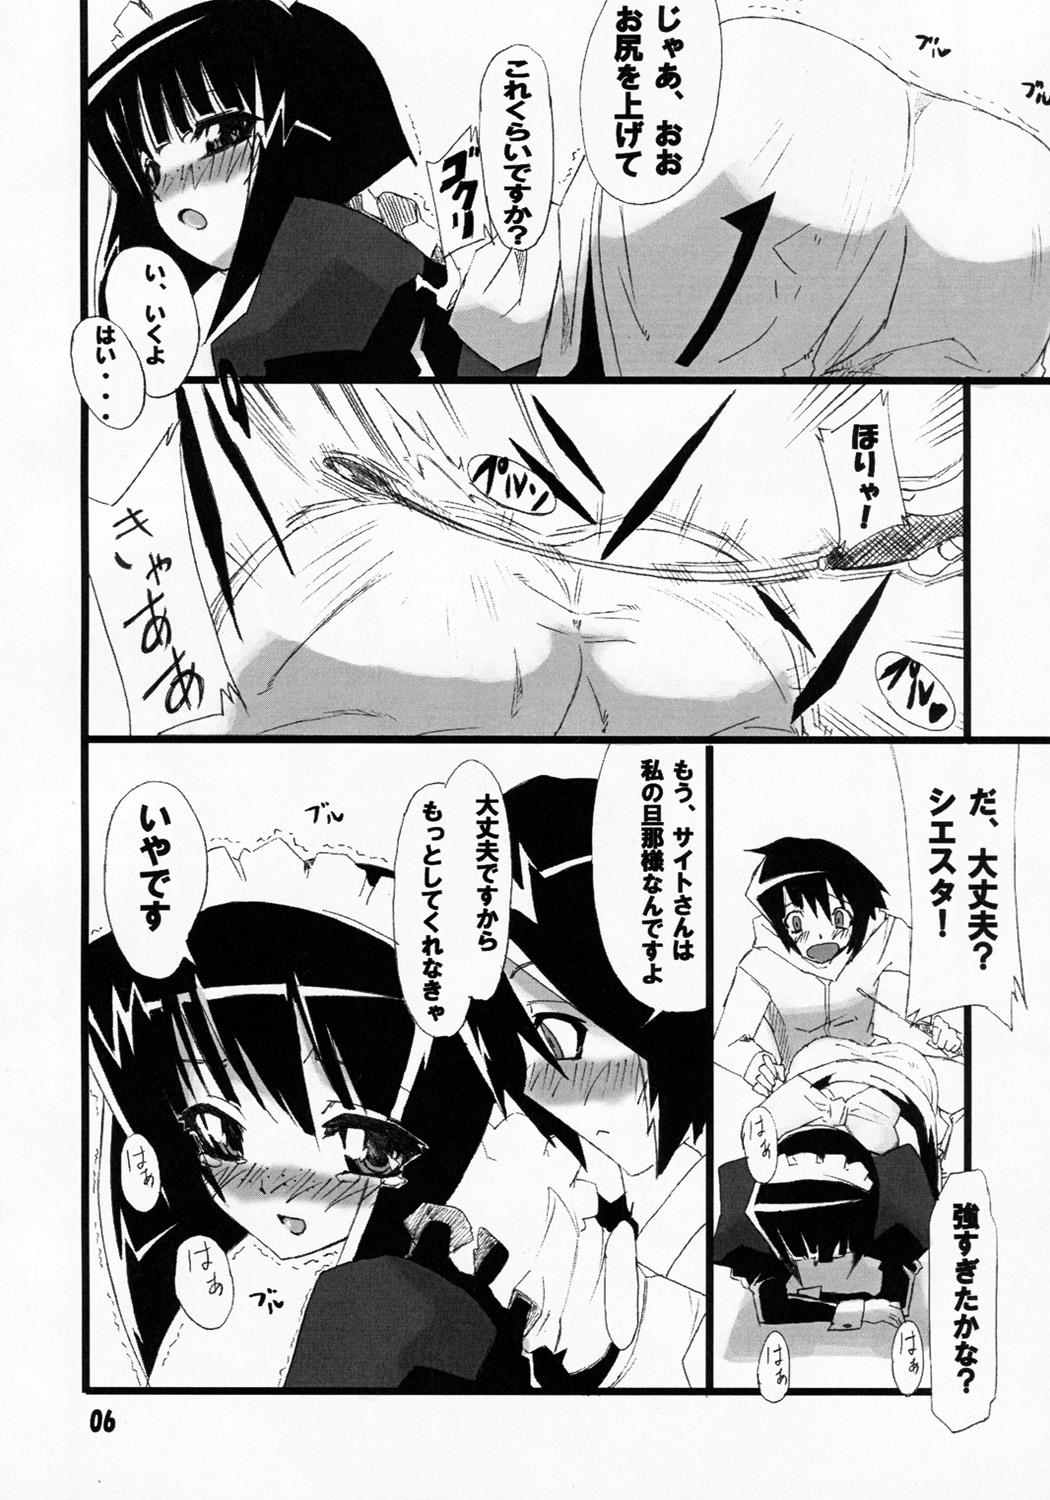 Hotporn Siesta-san no Nounai Jijou. - Zero no tsukaima Parody - Page 5